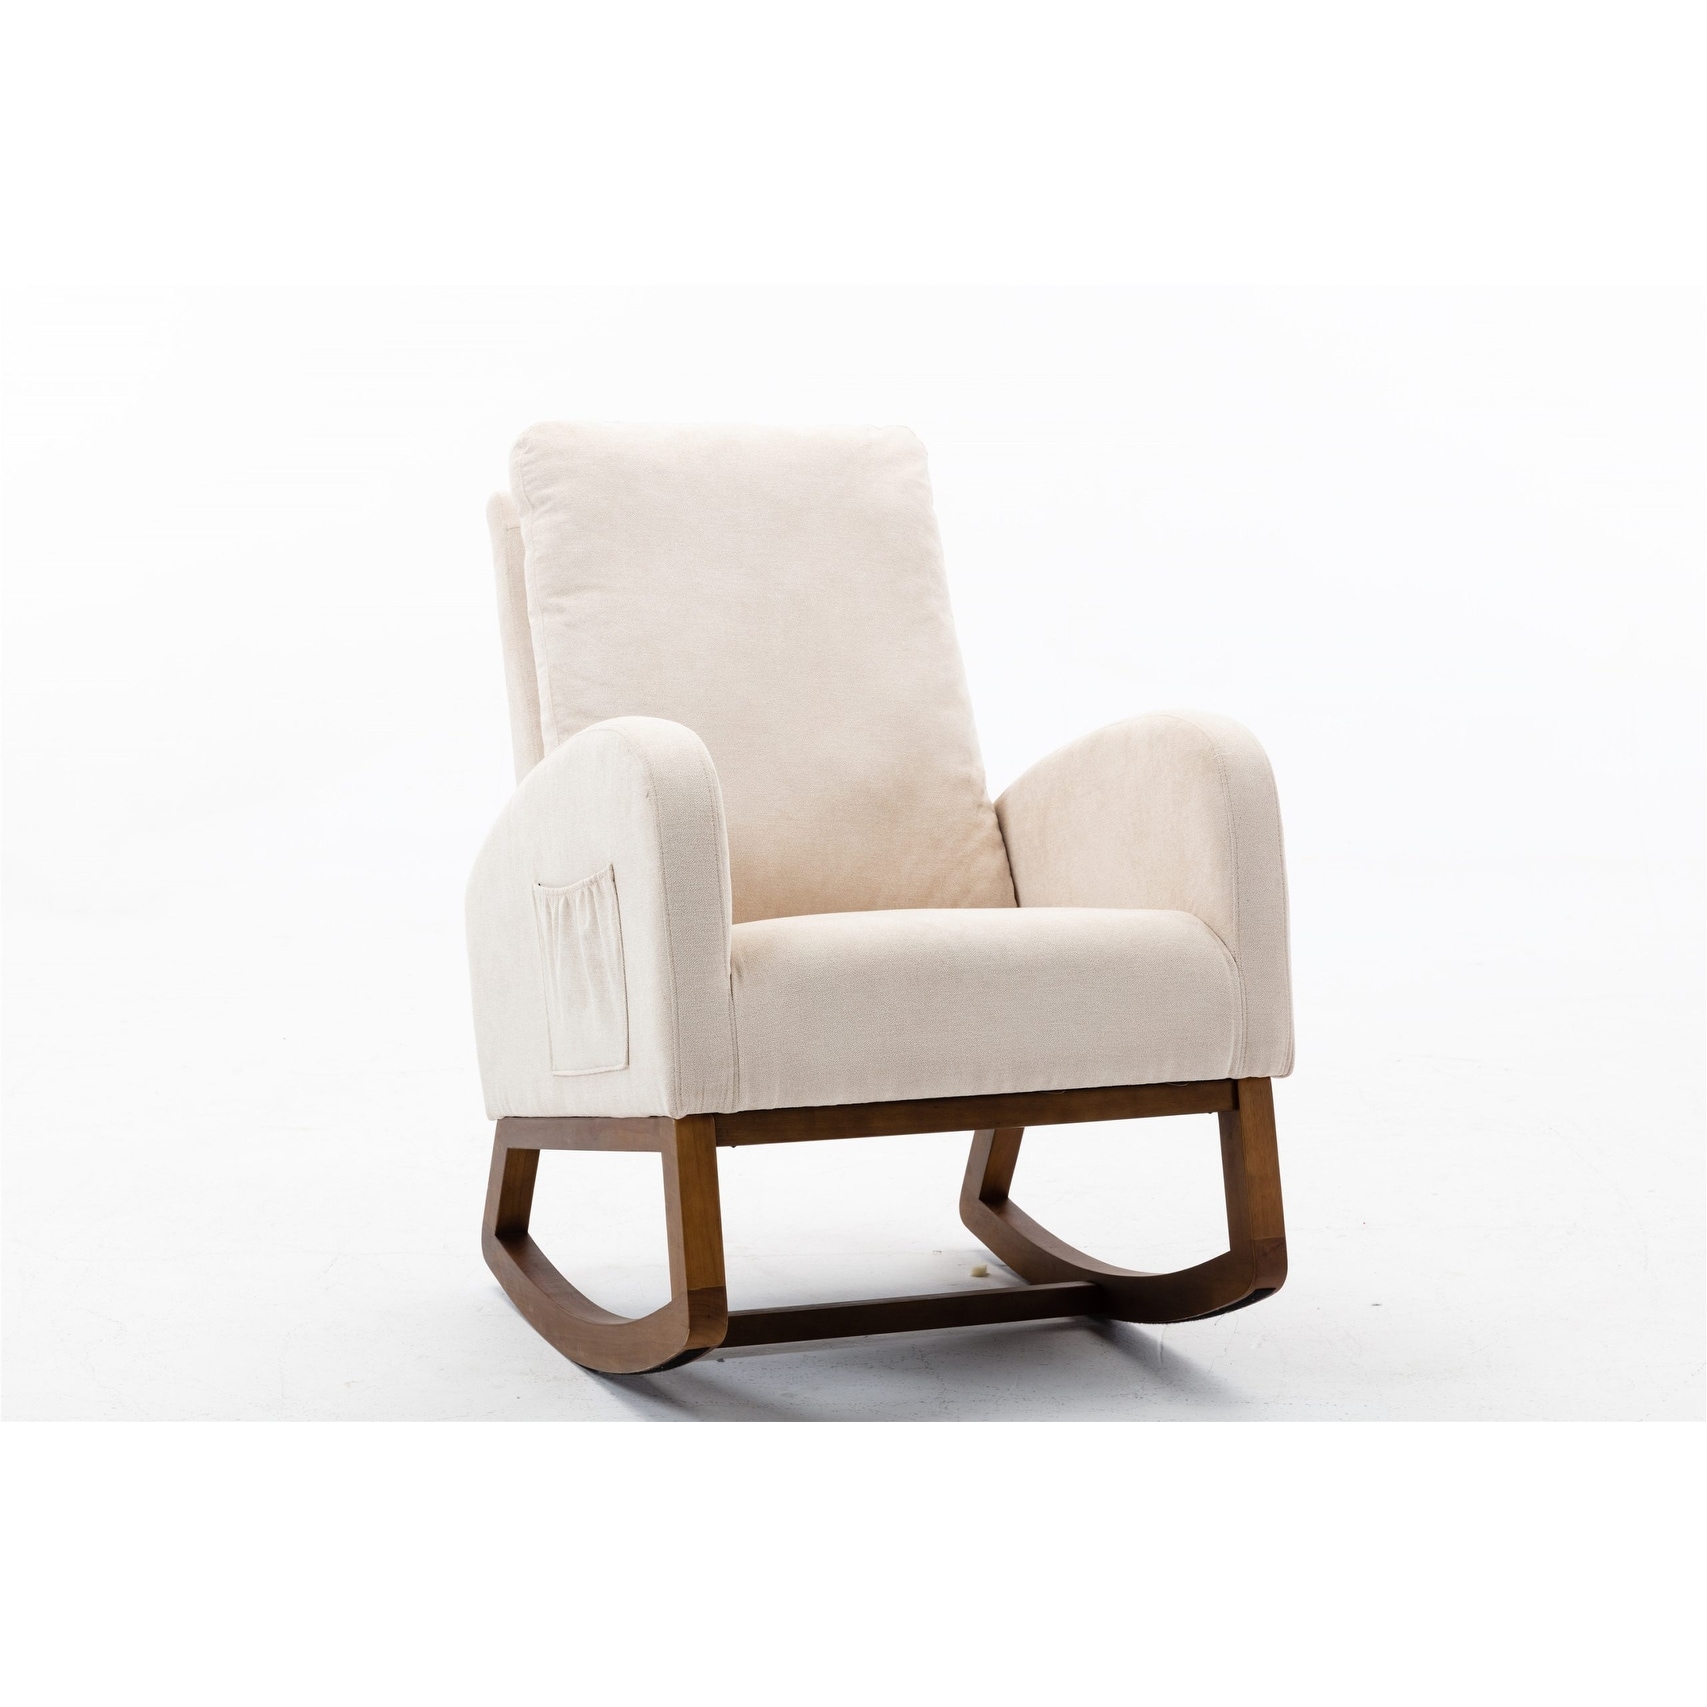 Mid-century Modern Design Rocking Chair